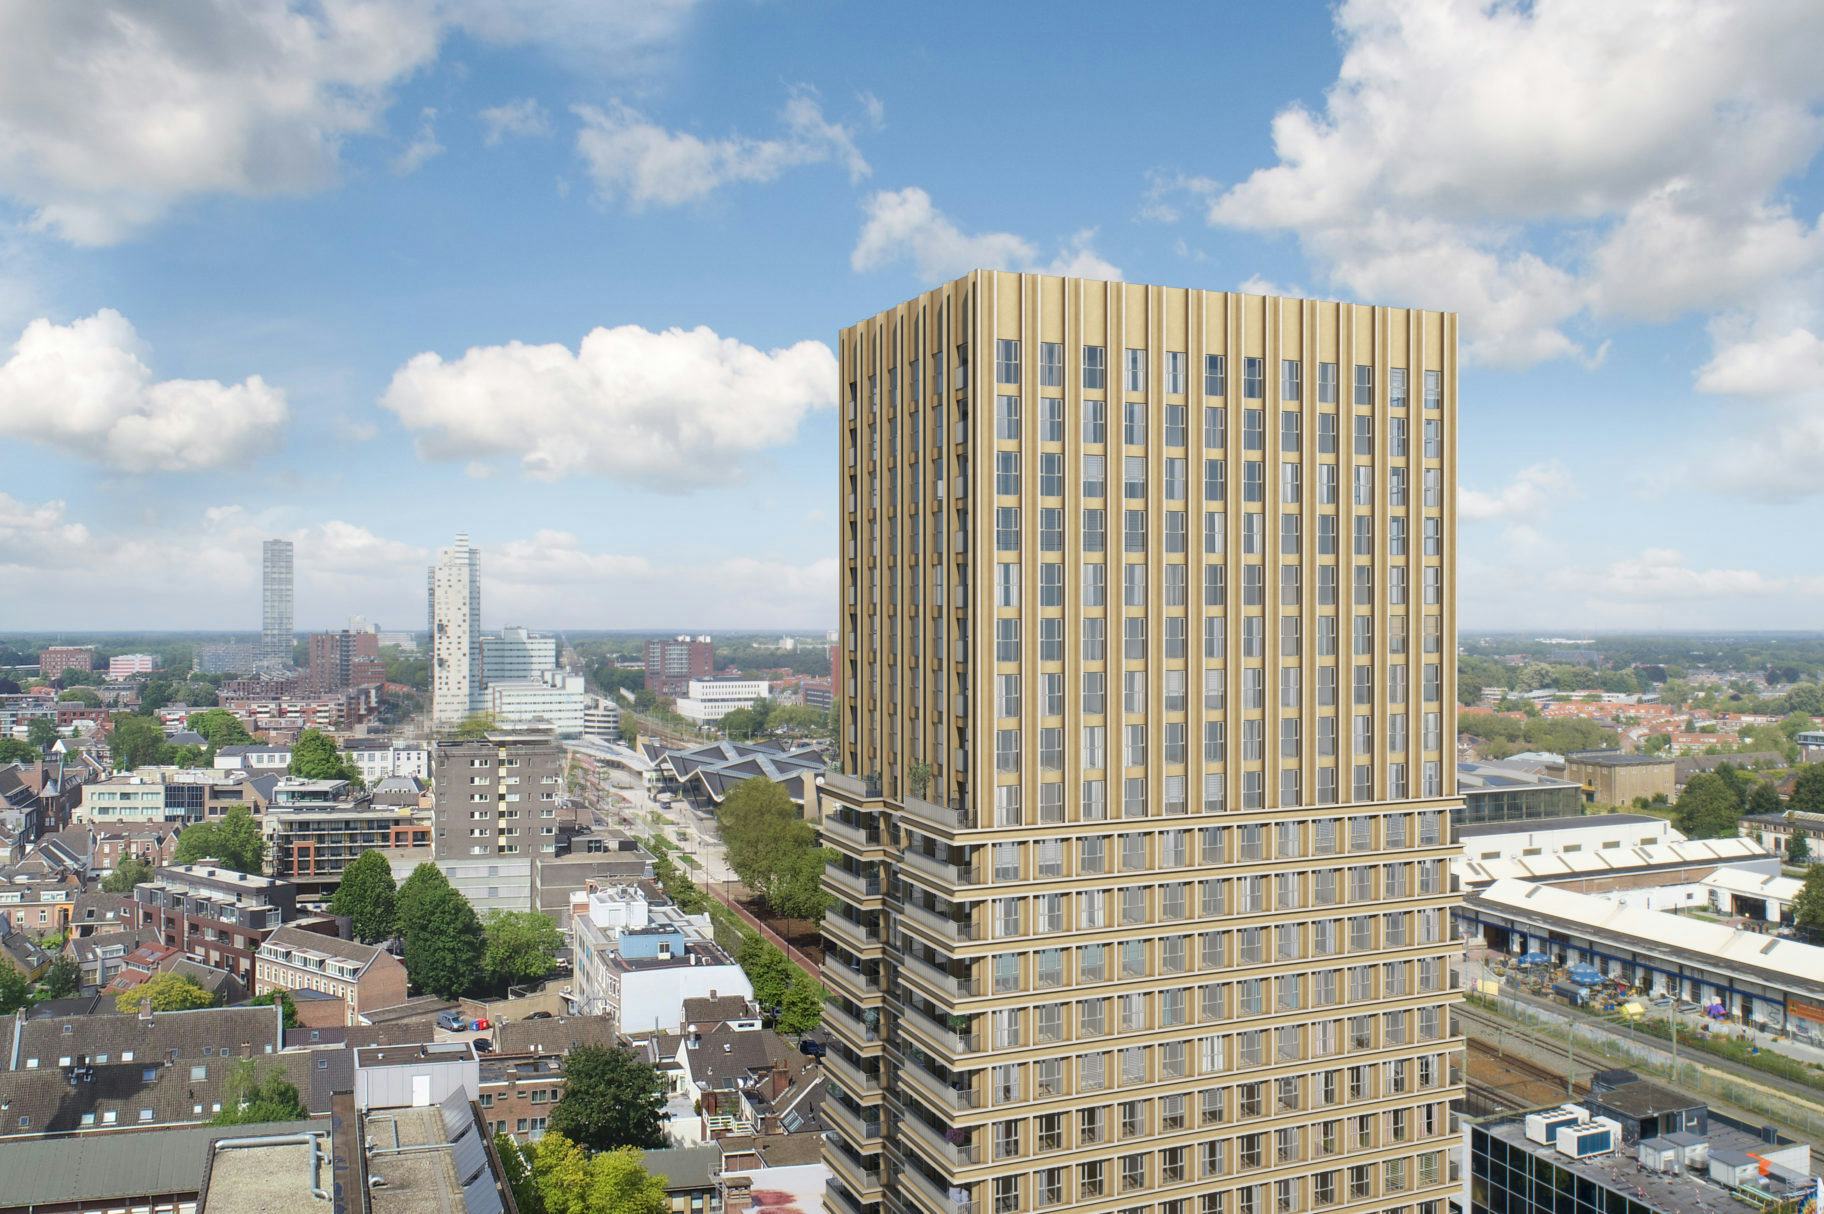 Altera verwerft 70 appartementen in het centrum van Tilburg